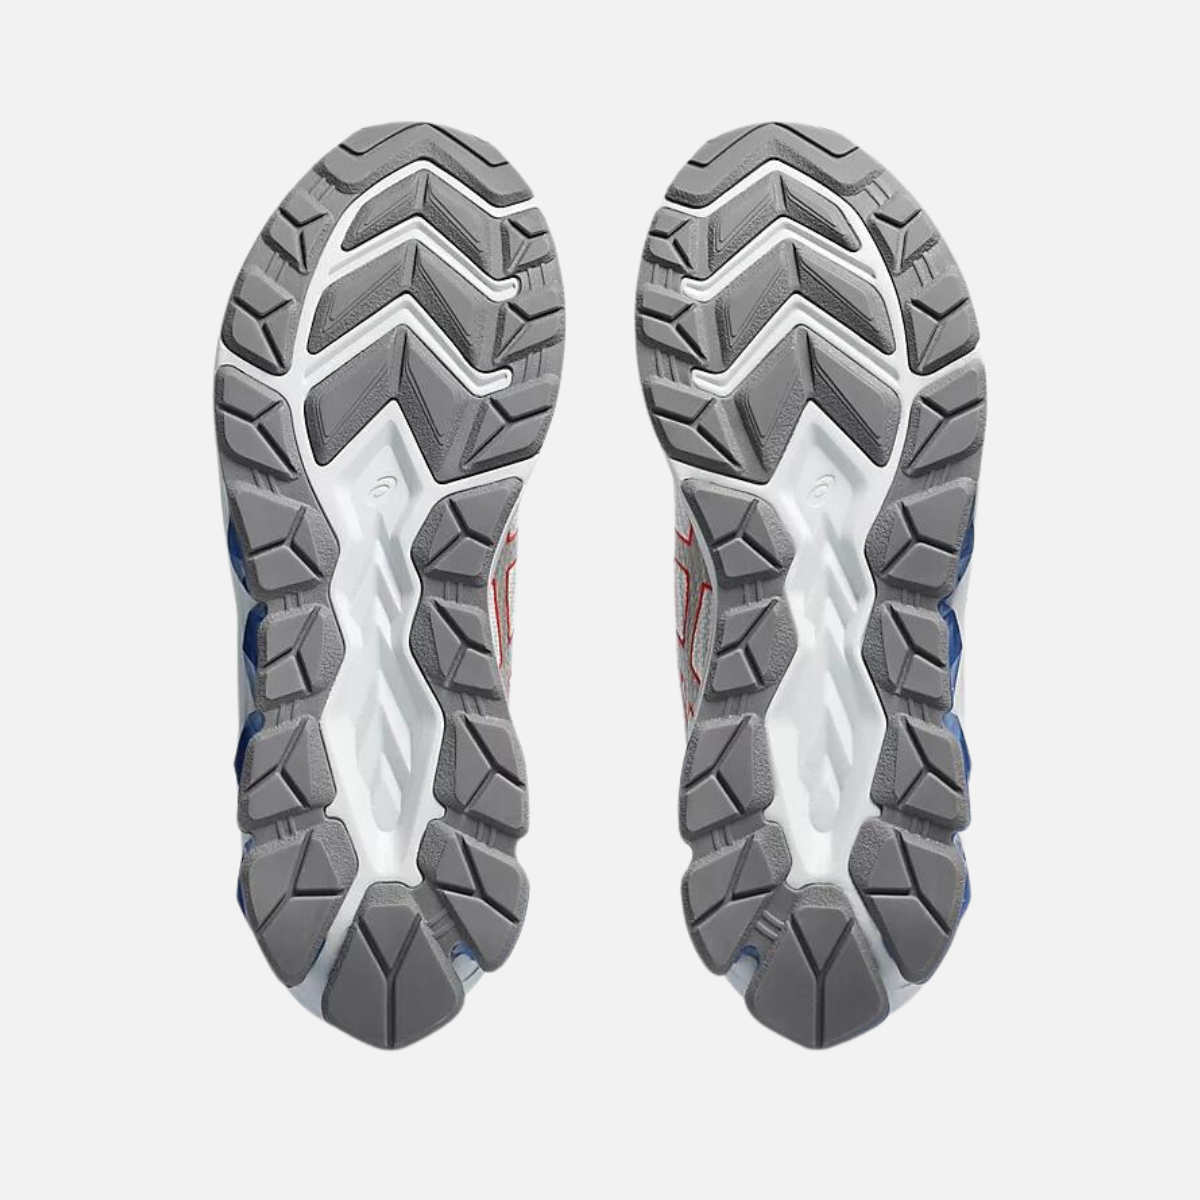 Asics GEL-QUANTUM 180 VII Men's Running Shoes -White/Concrete